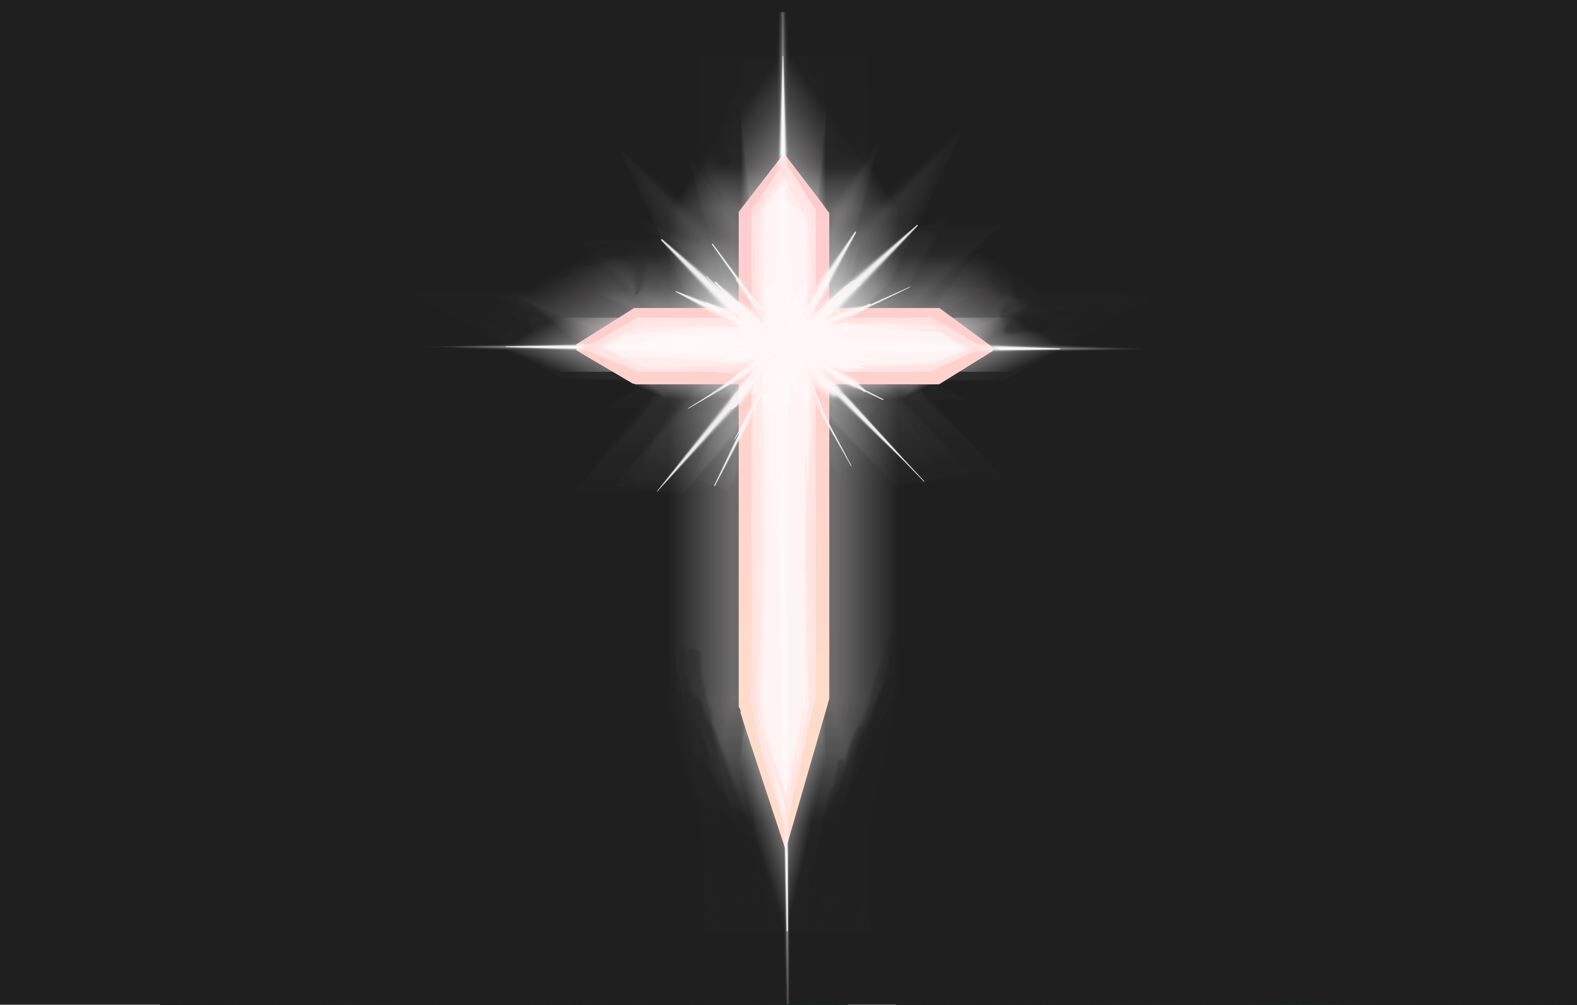 Glowing Cross